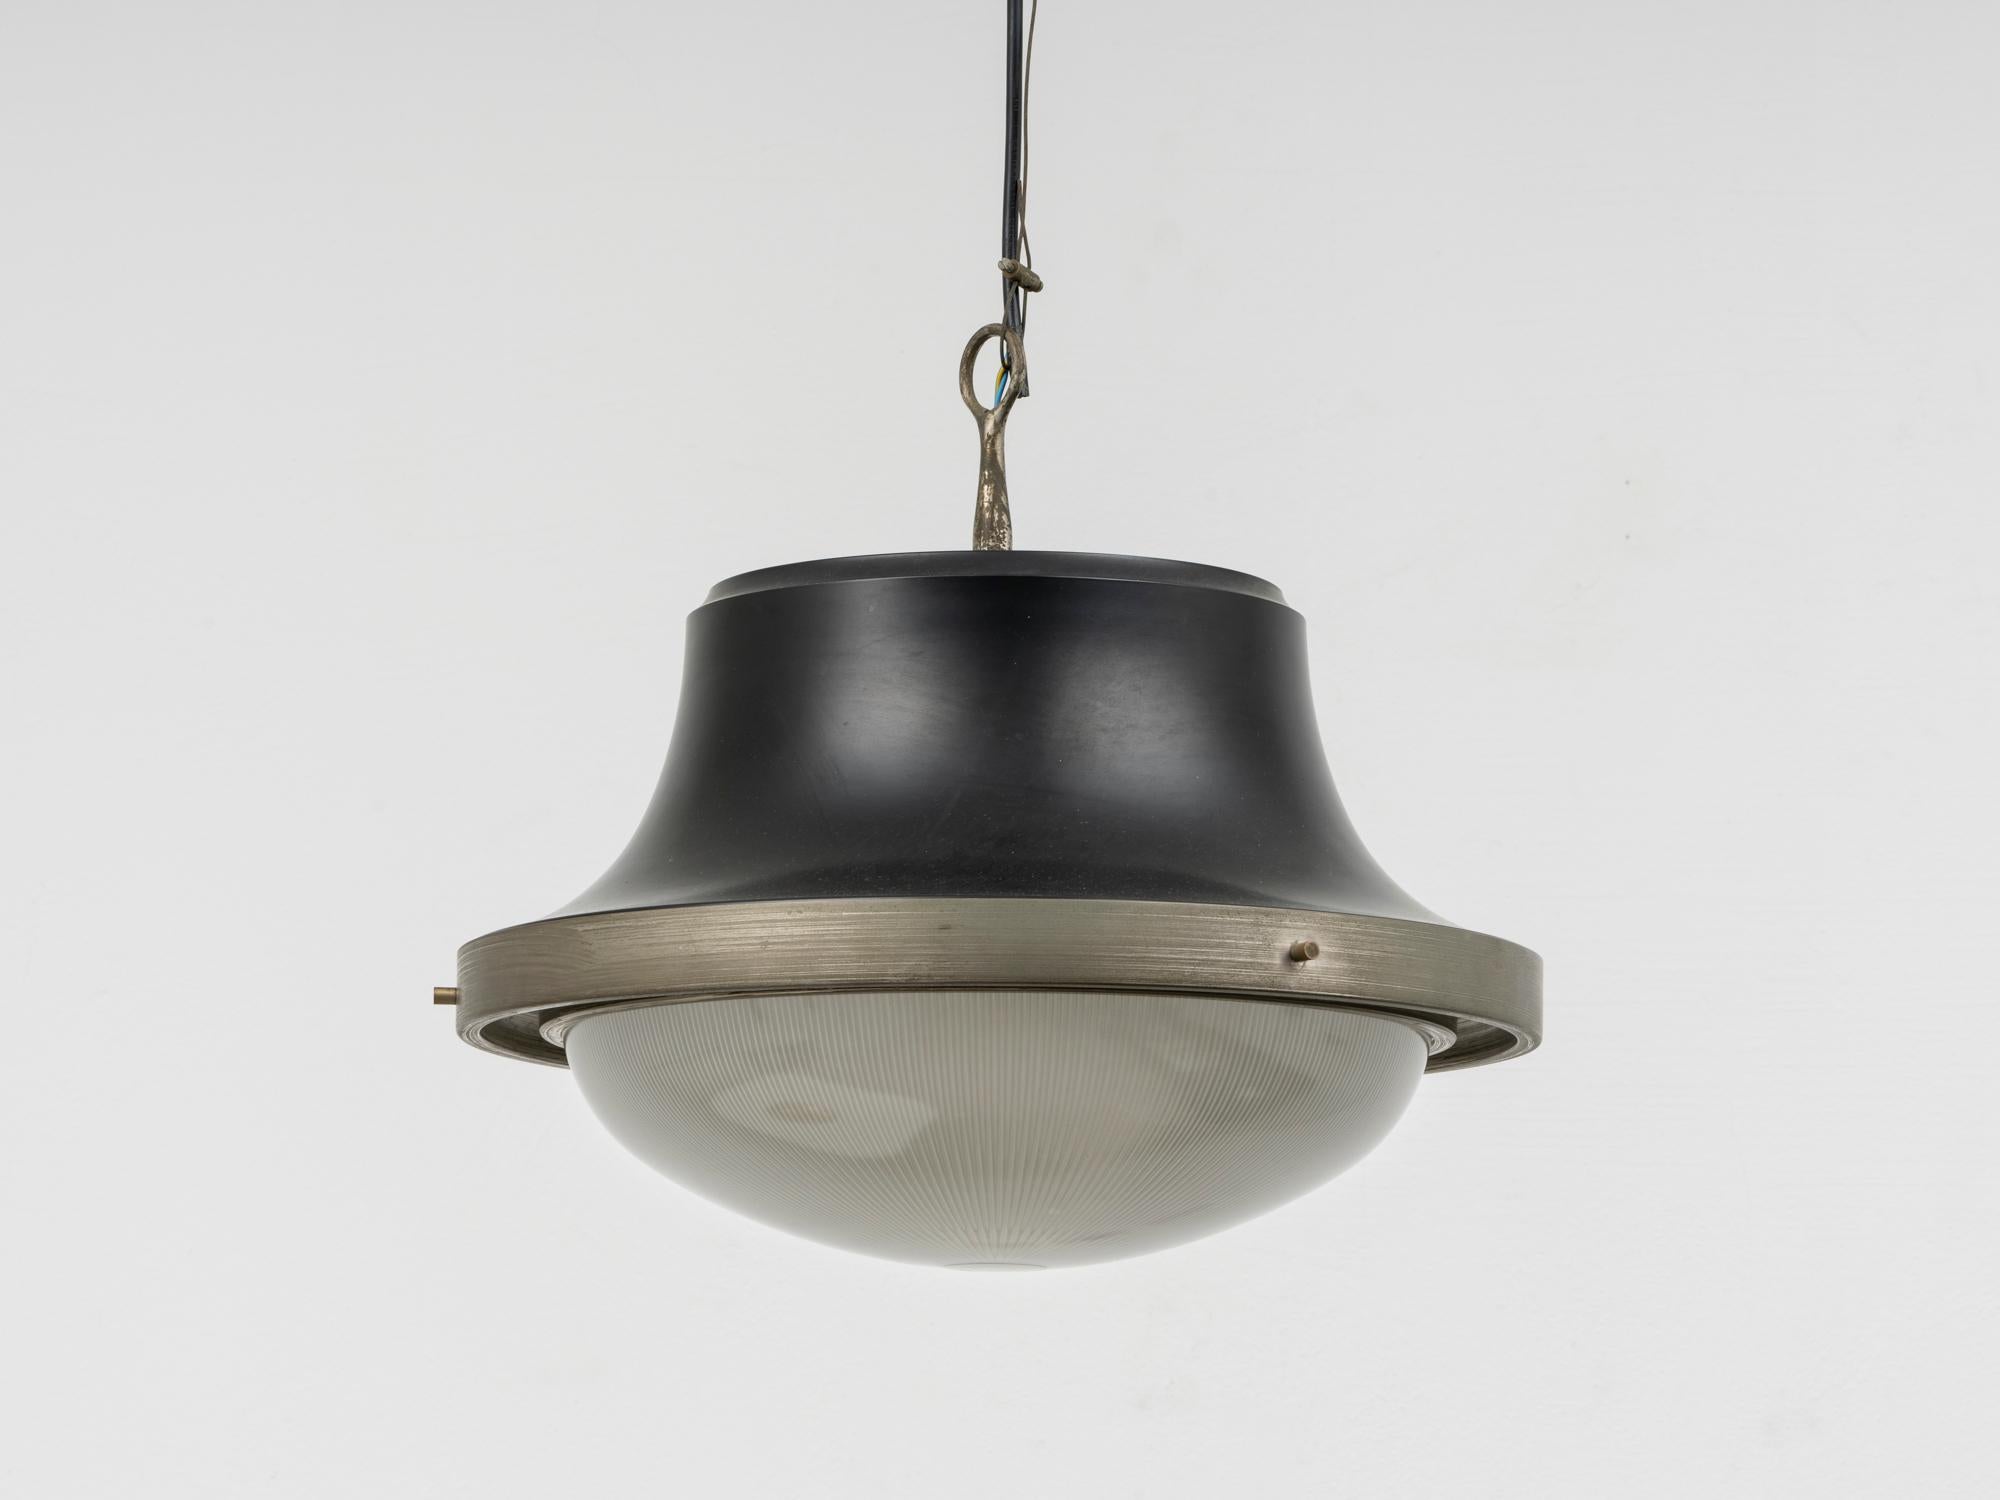 Diese Hängeleuchte wurde 1960 von Sergio Mazza entworfen und von Artemide produziert, dem Unternehmen, das er 1959 zusammen mit Ernesto Gismondi gegründet hatte. Diese Lampe, bekannt als  